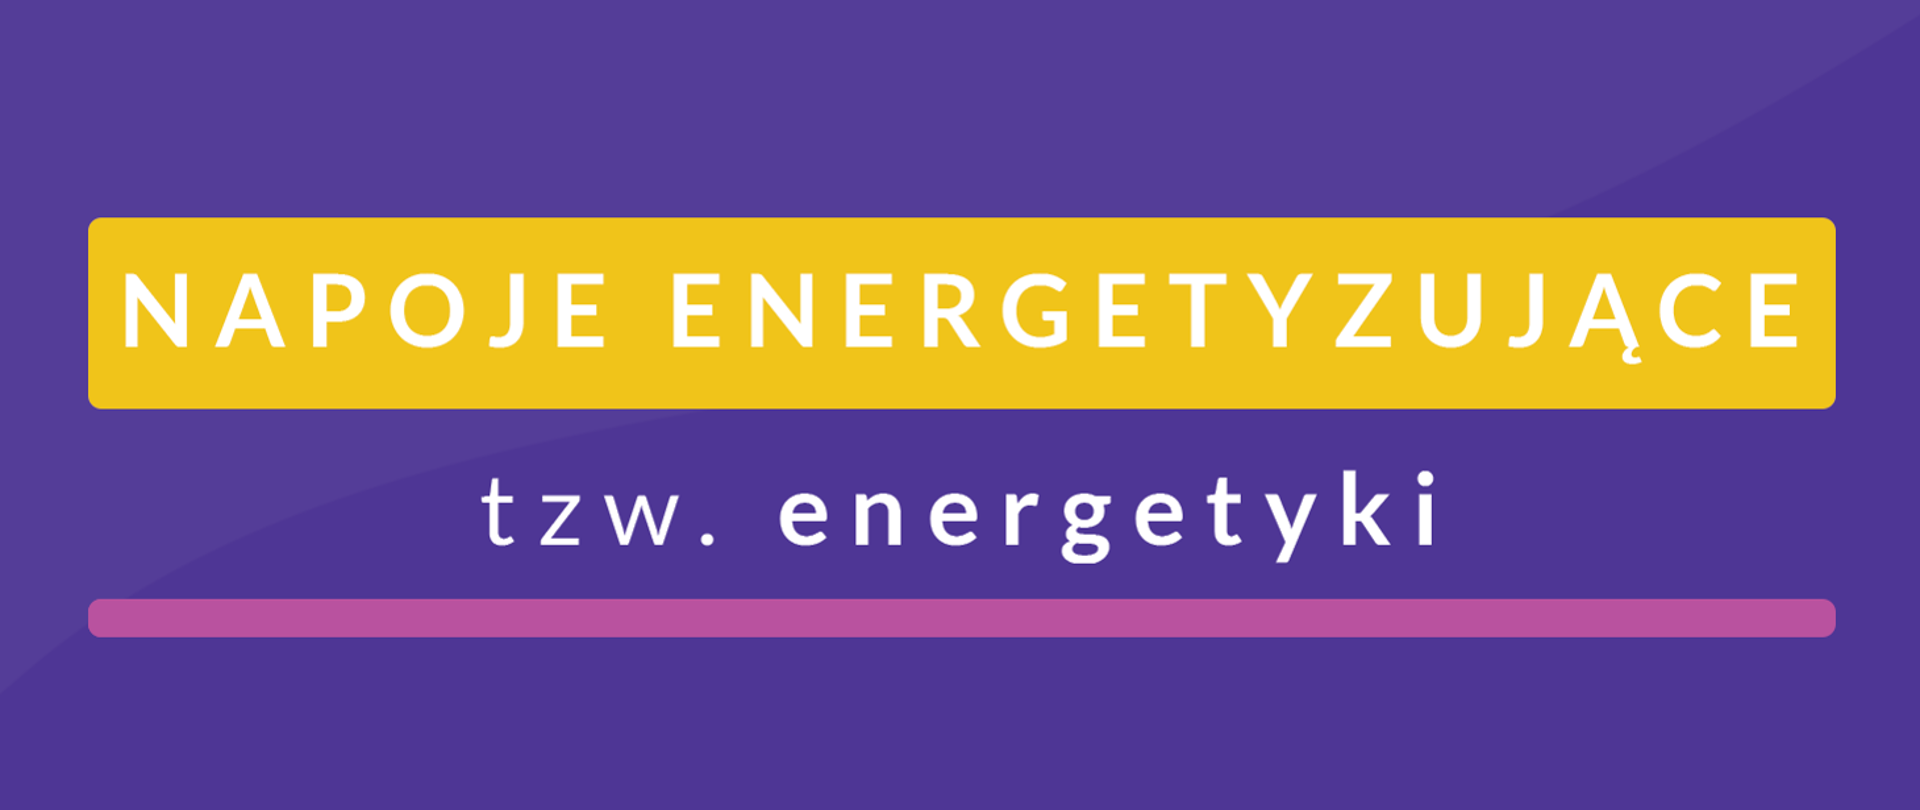 grafika koloru fioletowego, zawierająca napis o treści Napoje energetyzujące tzw. energetyki w białym kolorze